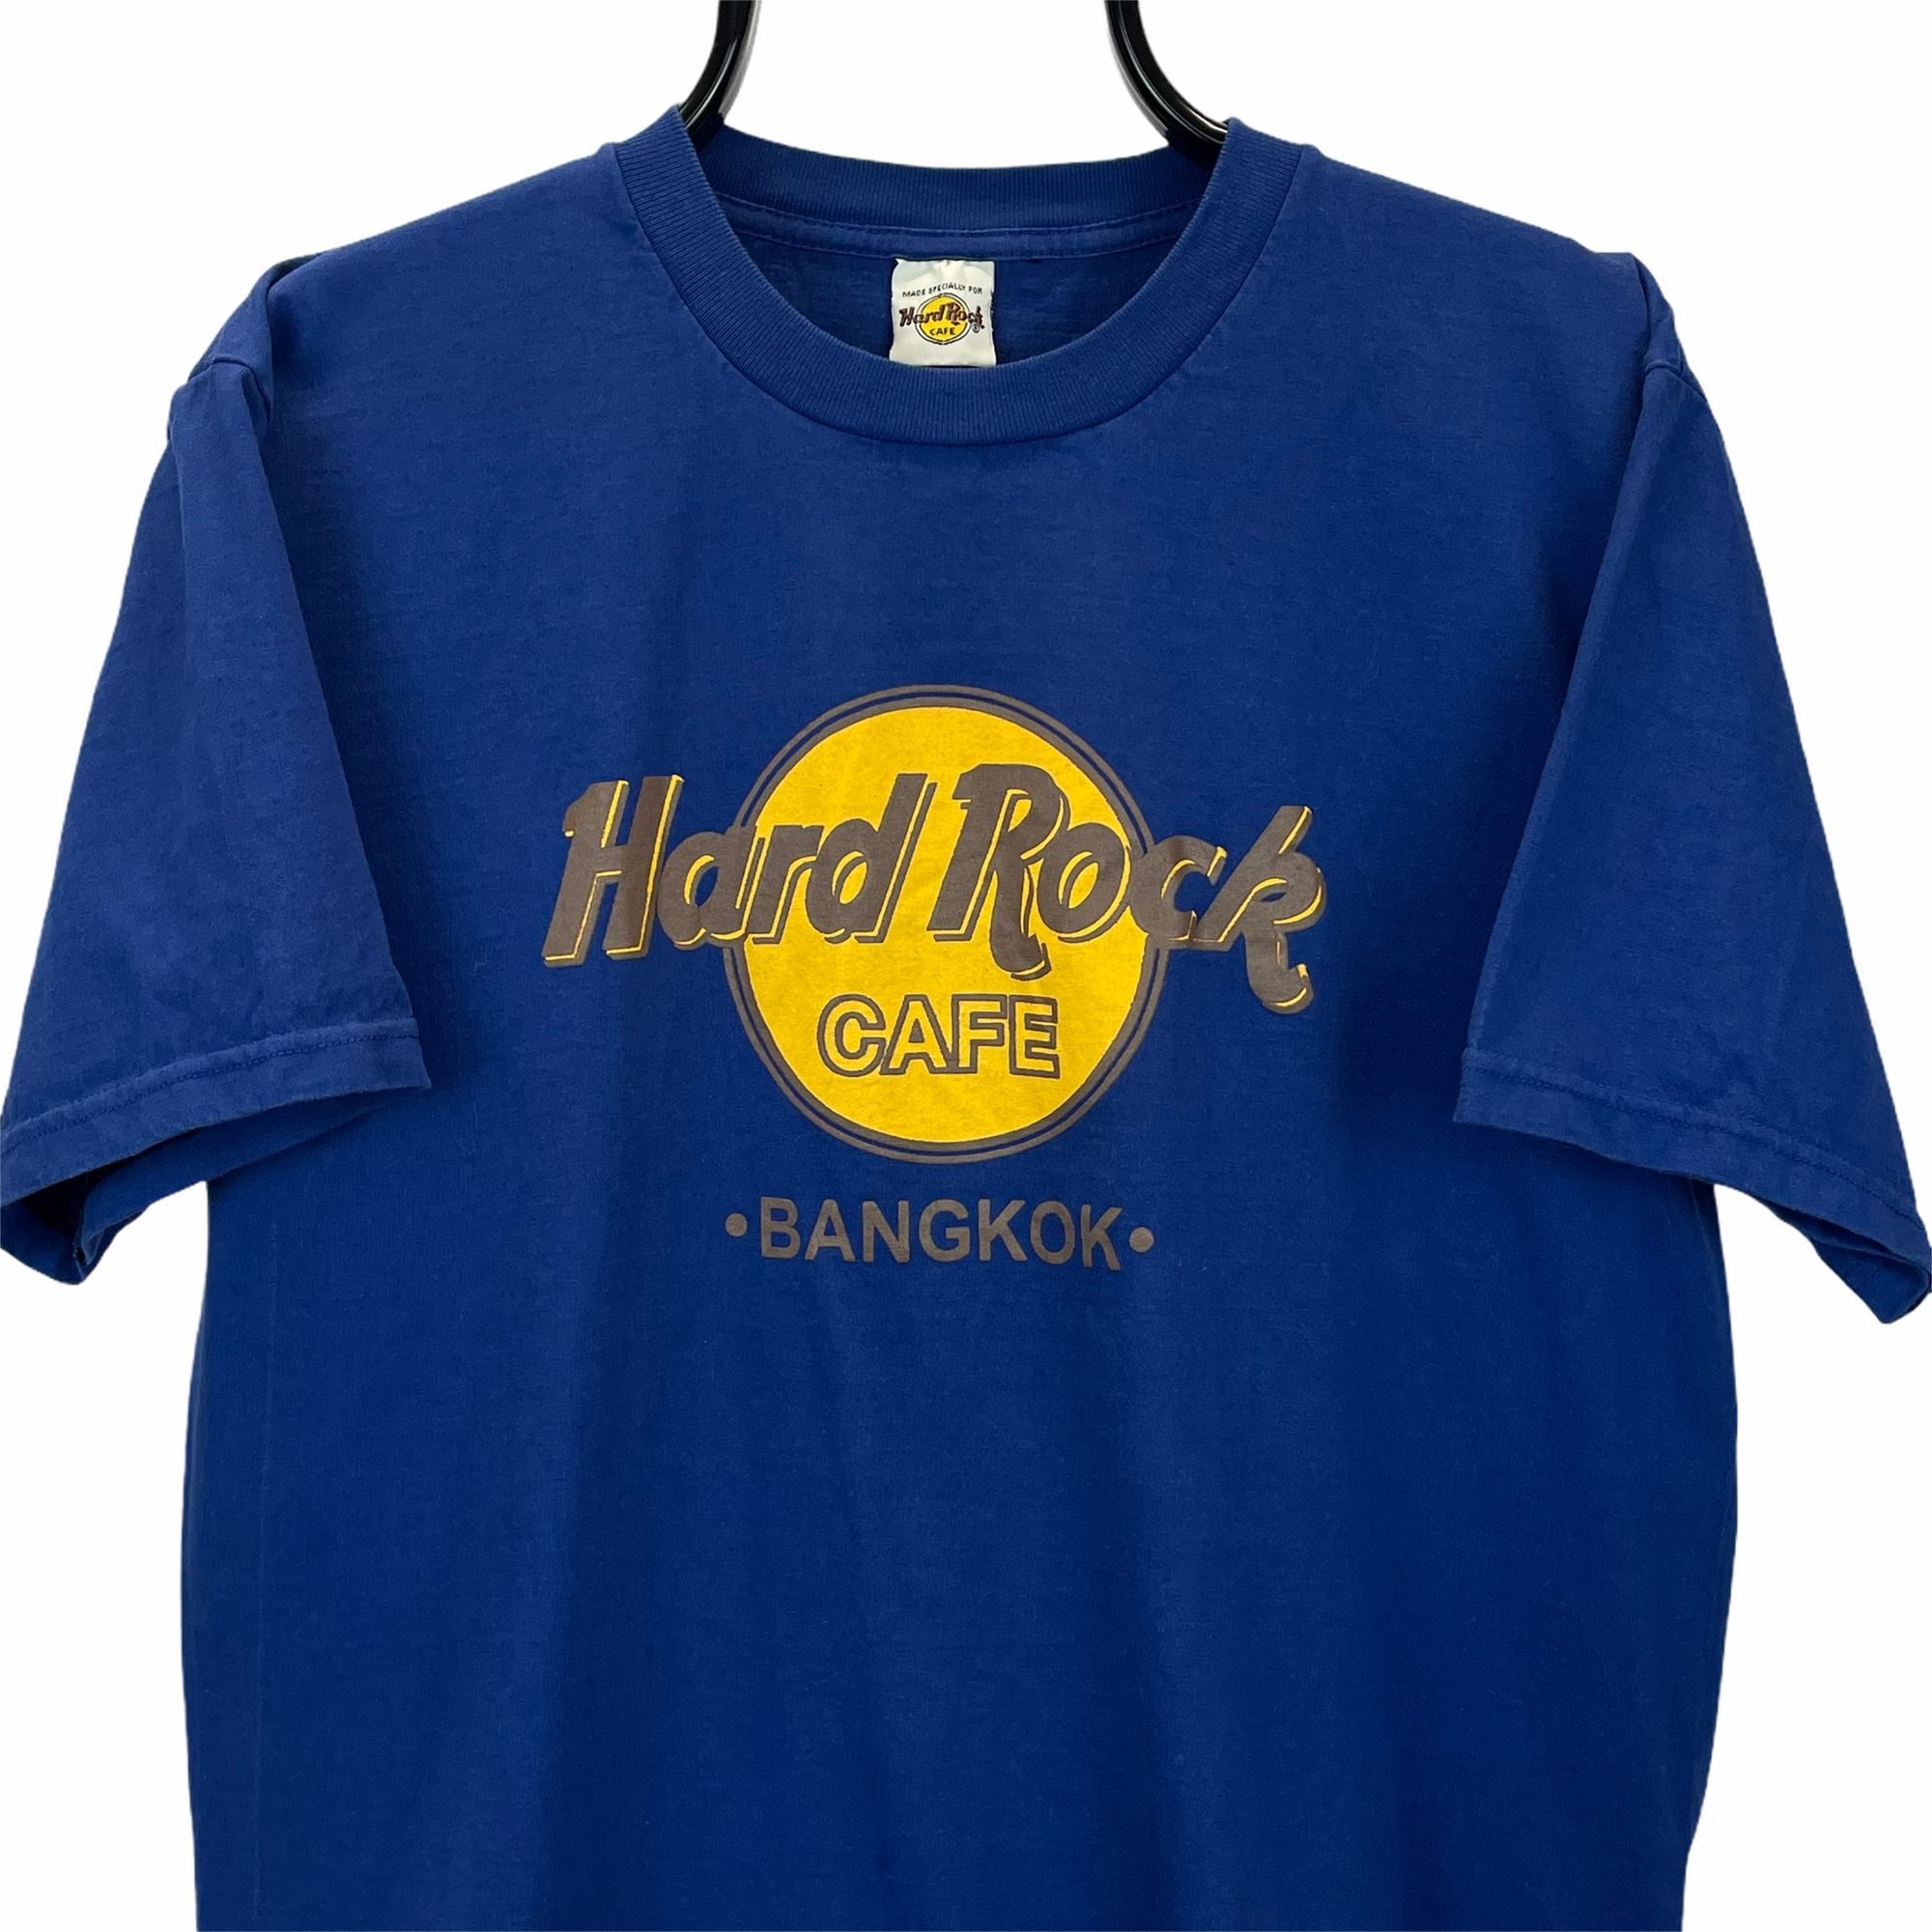 VINTAGE 90S HARD ROCK CAFE BANGKOK TEE - MEN'S LARGE/WOMEN'S XL